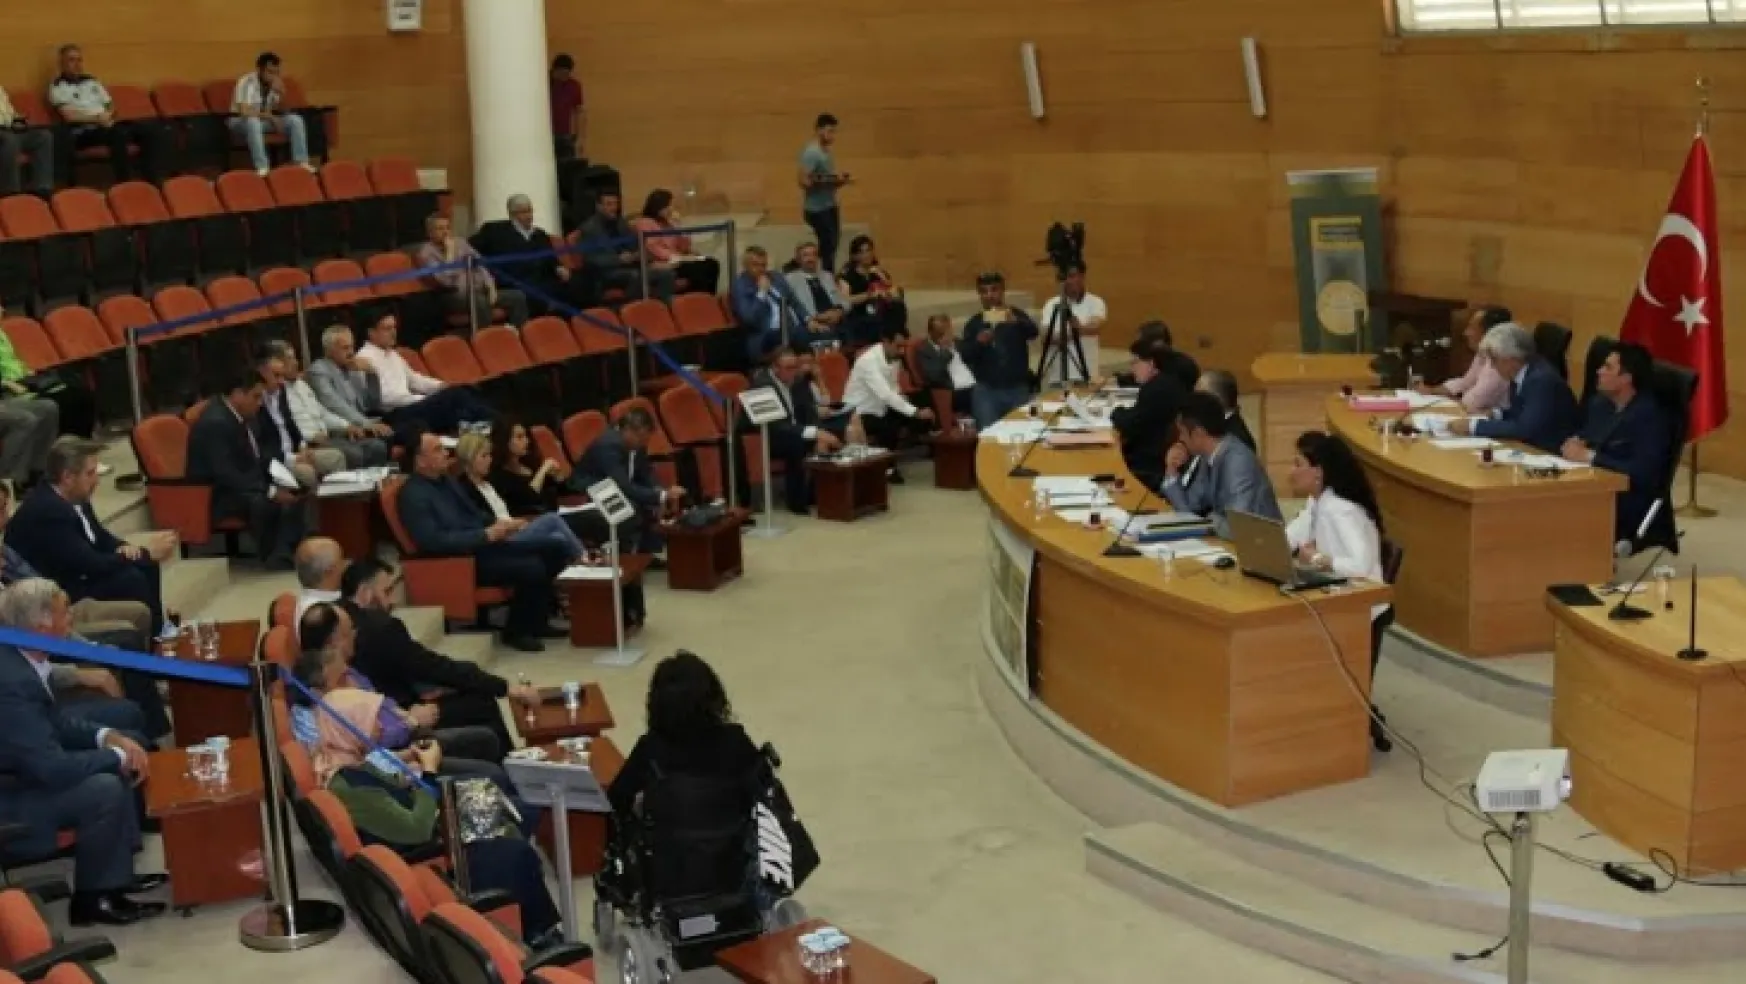 Akhisar Belediyesi 2017 Mayıs Ayı olağan meclis toplantısı yapıldı